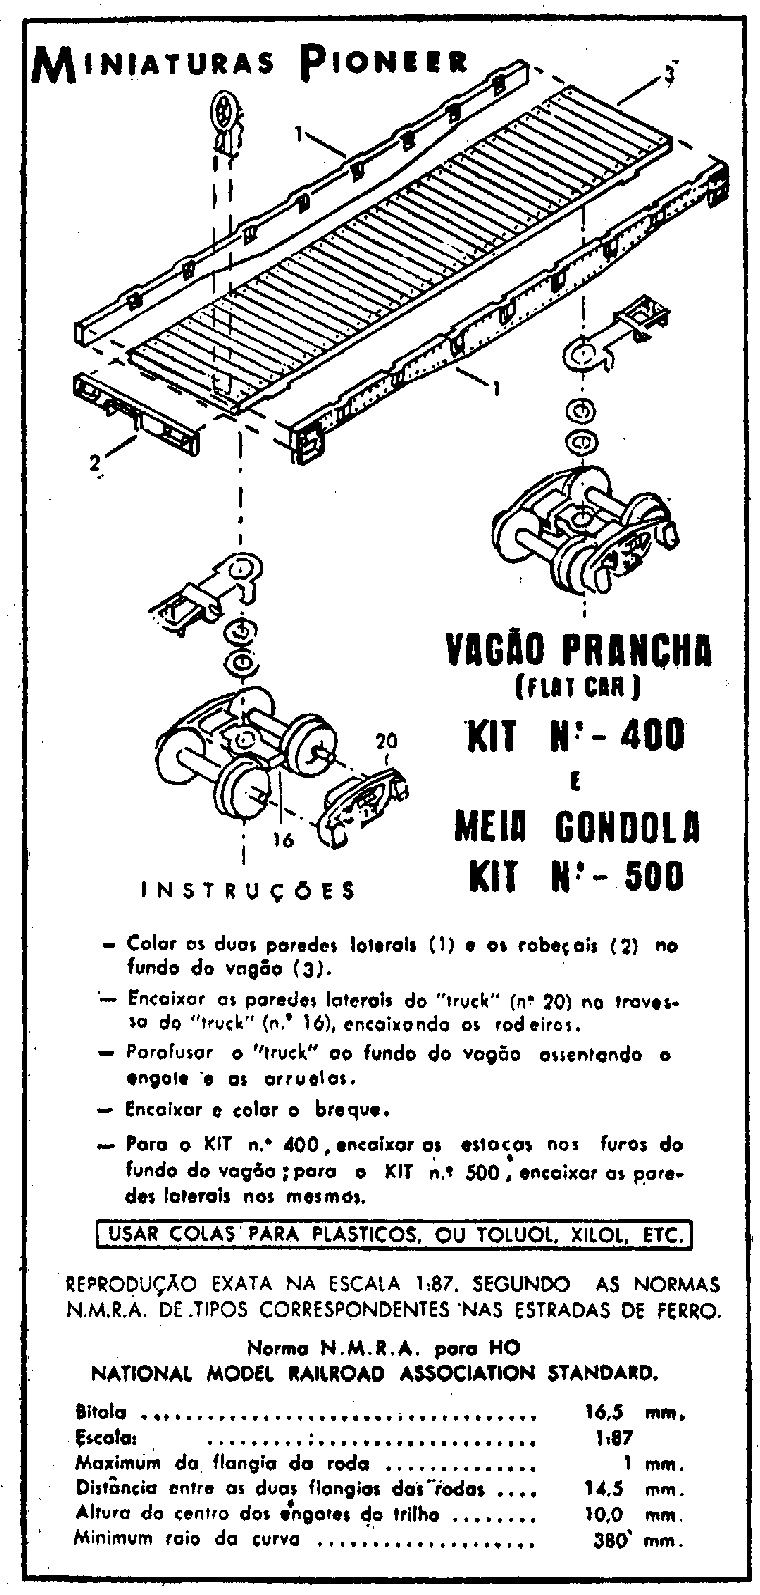 Folha de instruções para montagem dos vagões prancha e meia-gôndola da Miniaturas Pioneer - Ferreomodelismo